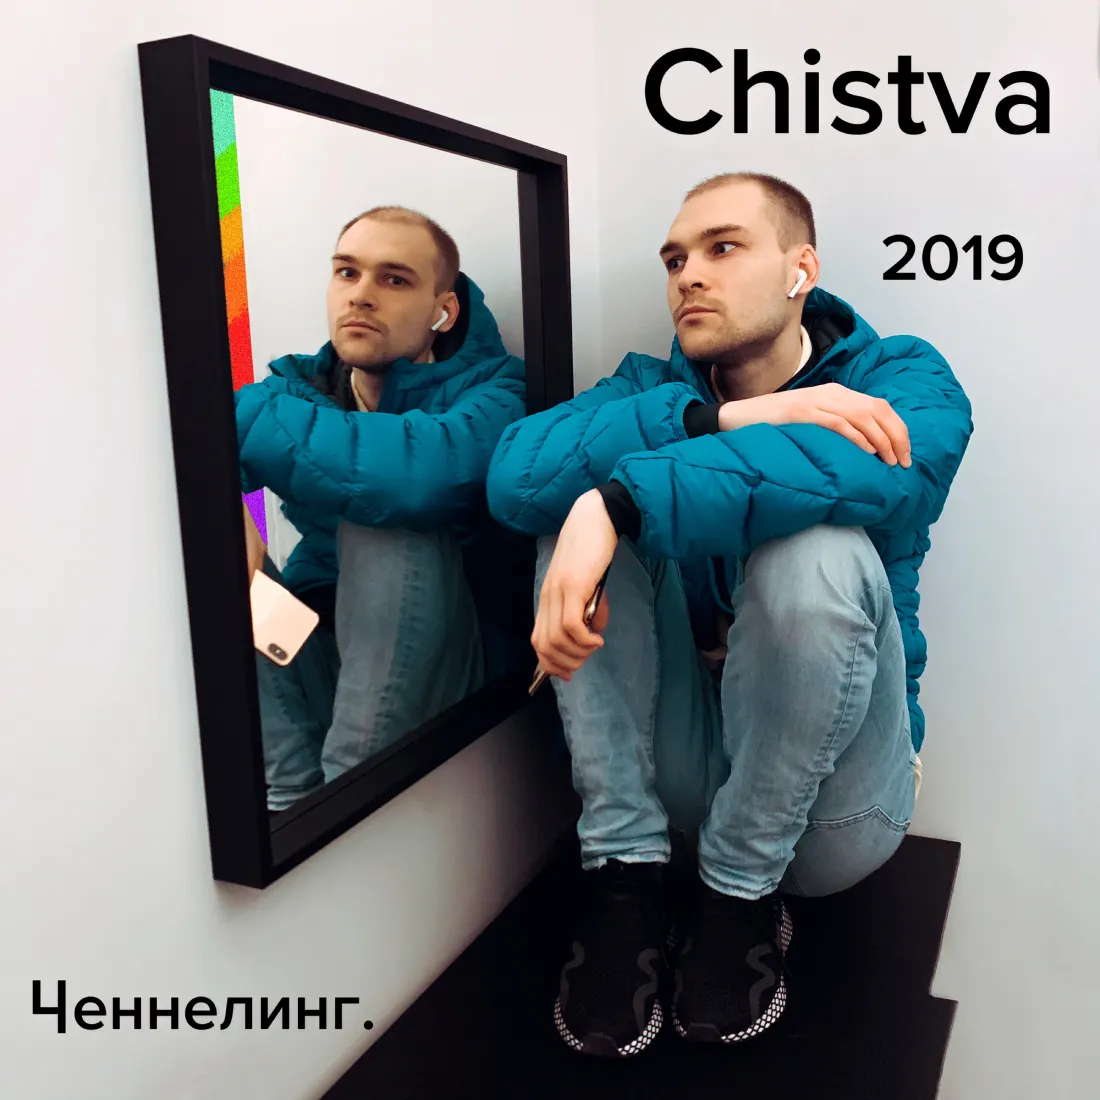 Chistva - «Ченнелинг» реп музыка